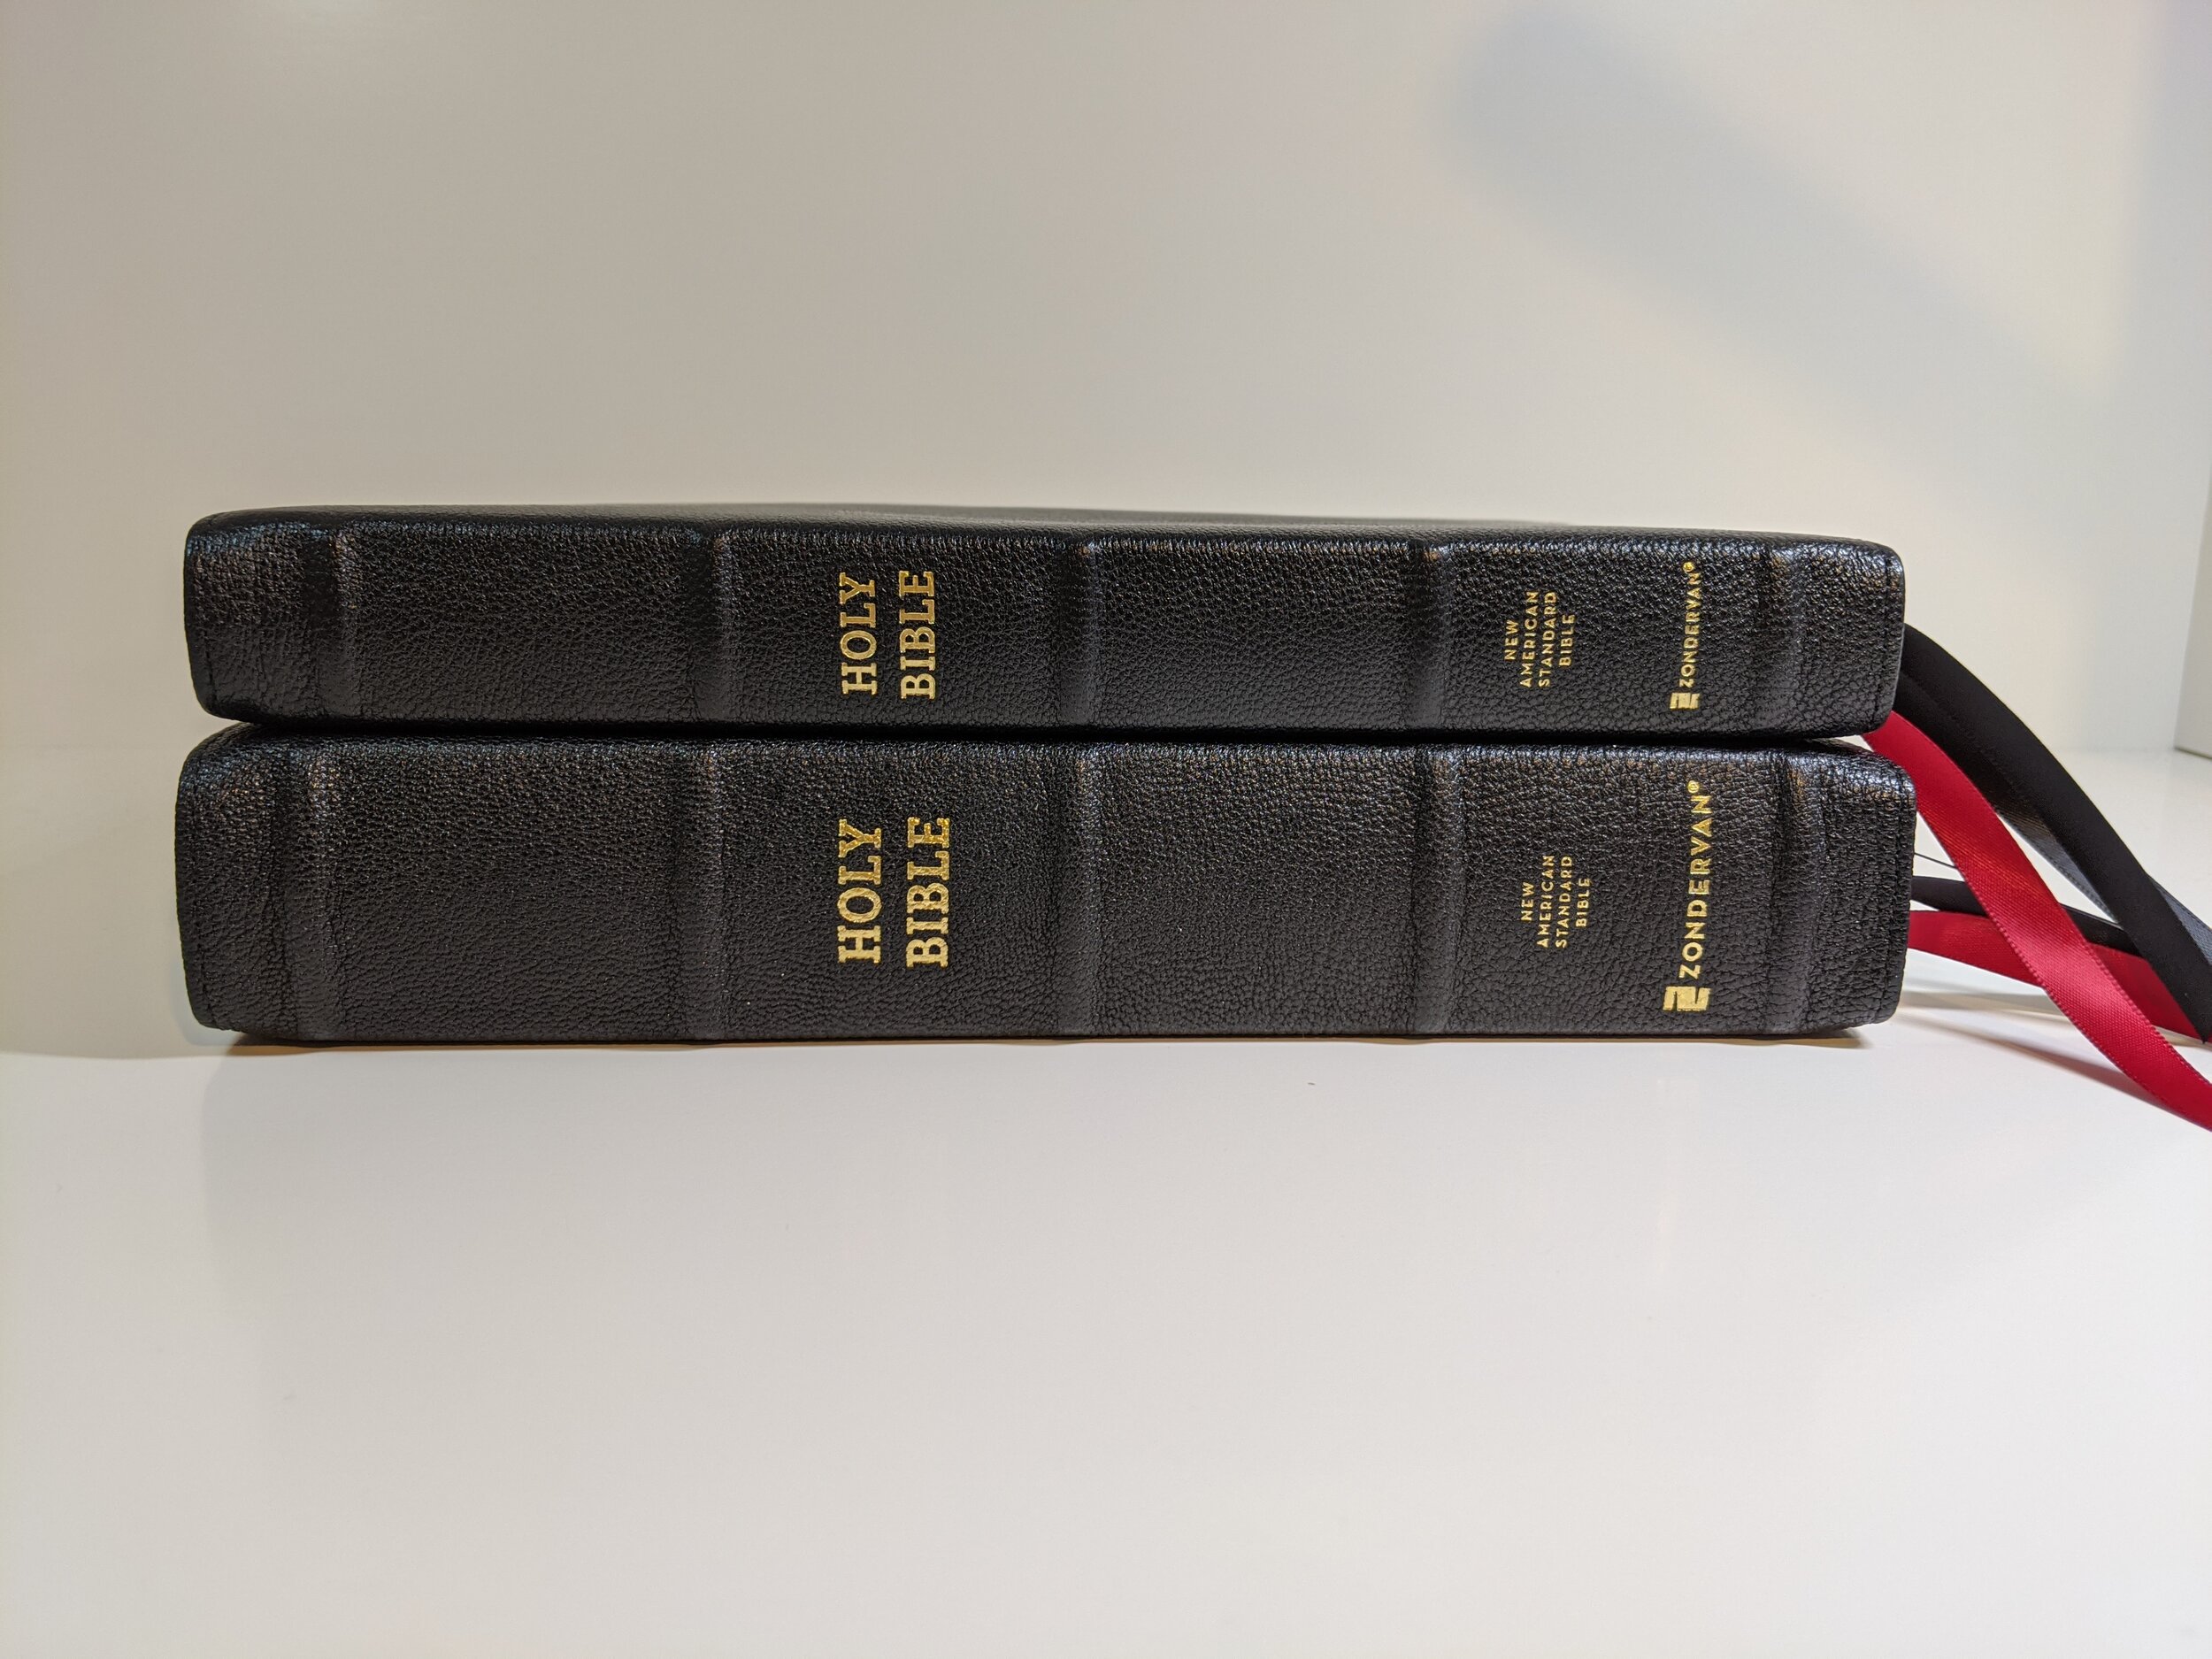  top - Zondervan Preacher’s Bible bottom - Zondervan Single Column Reference Bible 